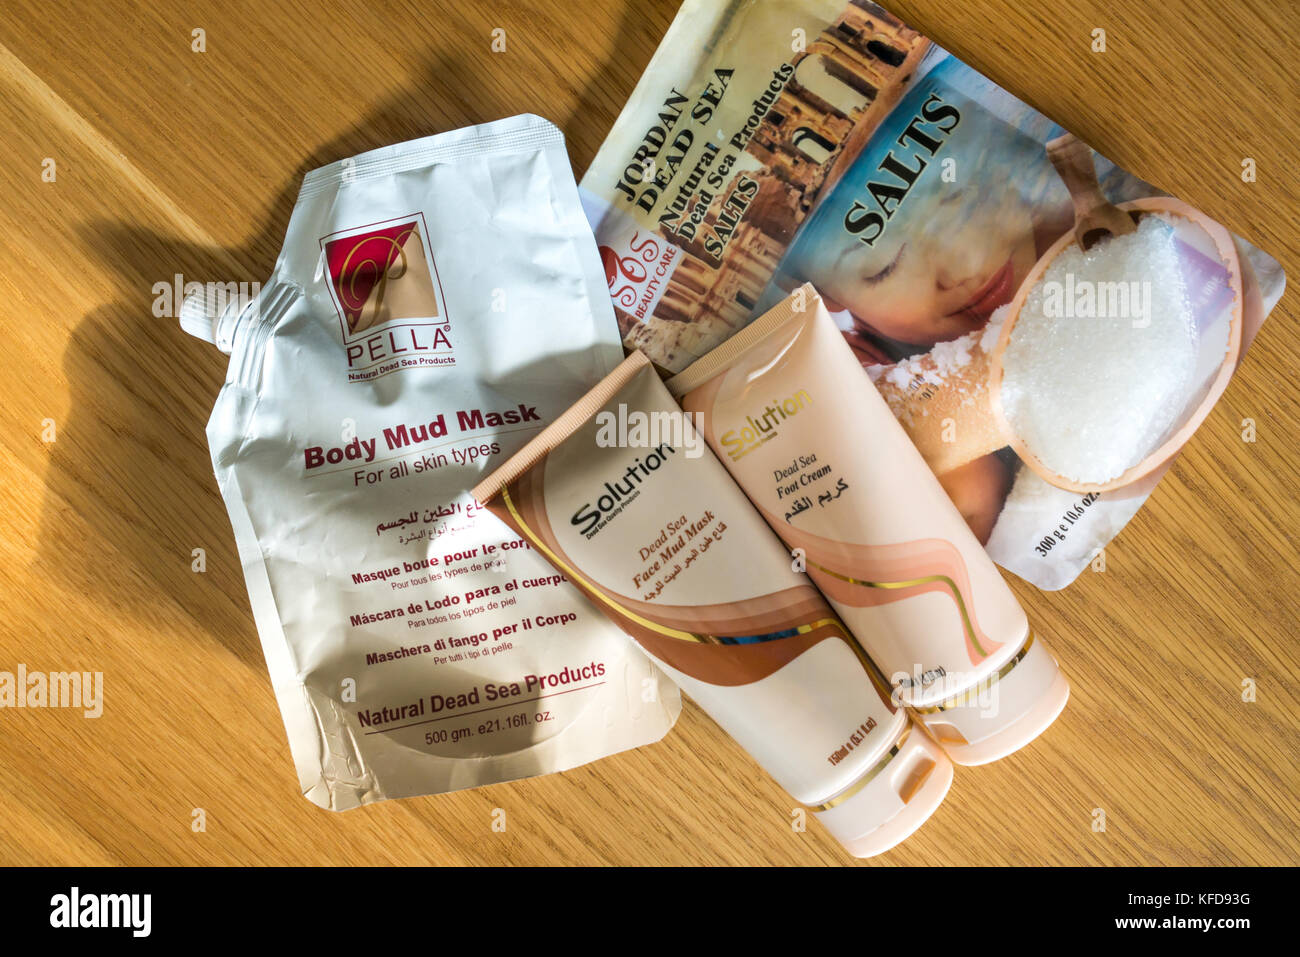 Souvenirs de vacances des produits cosmétiques de la Mer Morte, Jordanie, y  compris des sels de bain, crème pour les pieds, le corps et le visage,  masque de boue, masque de boue